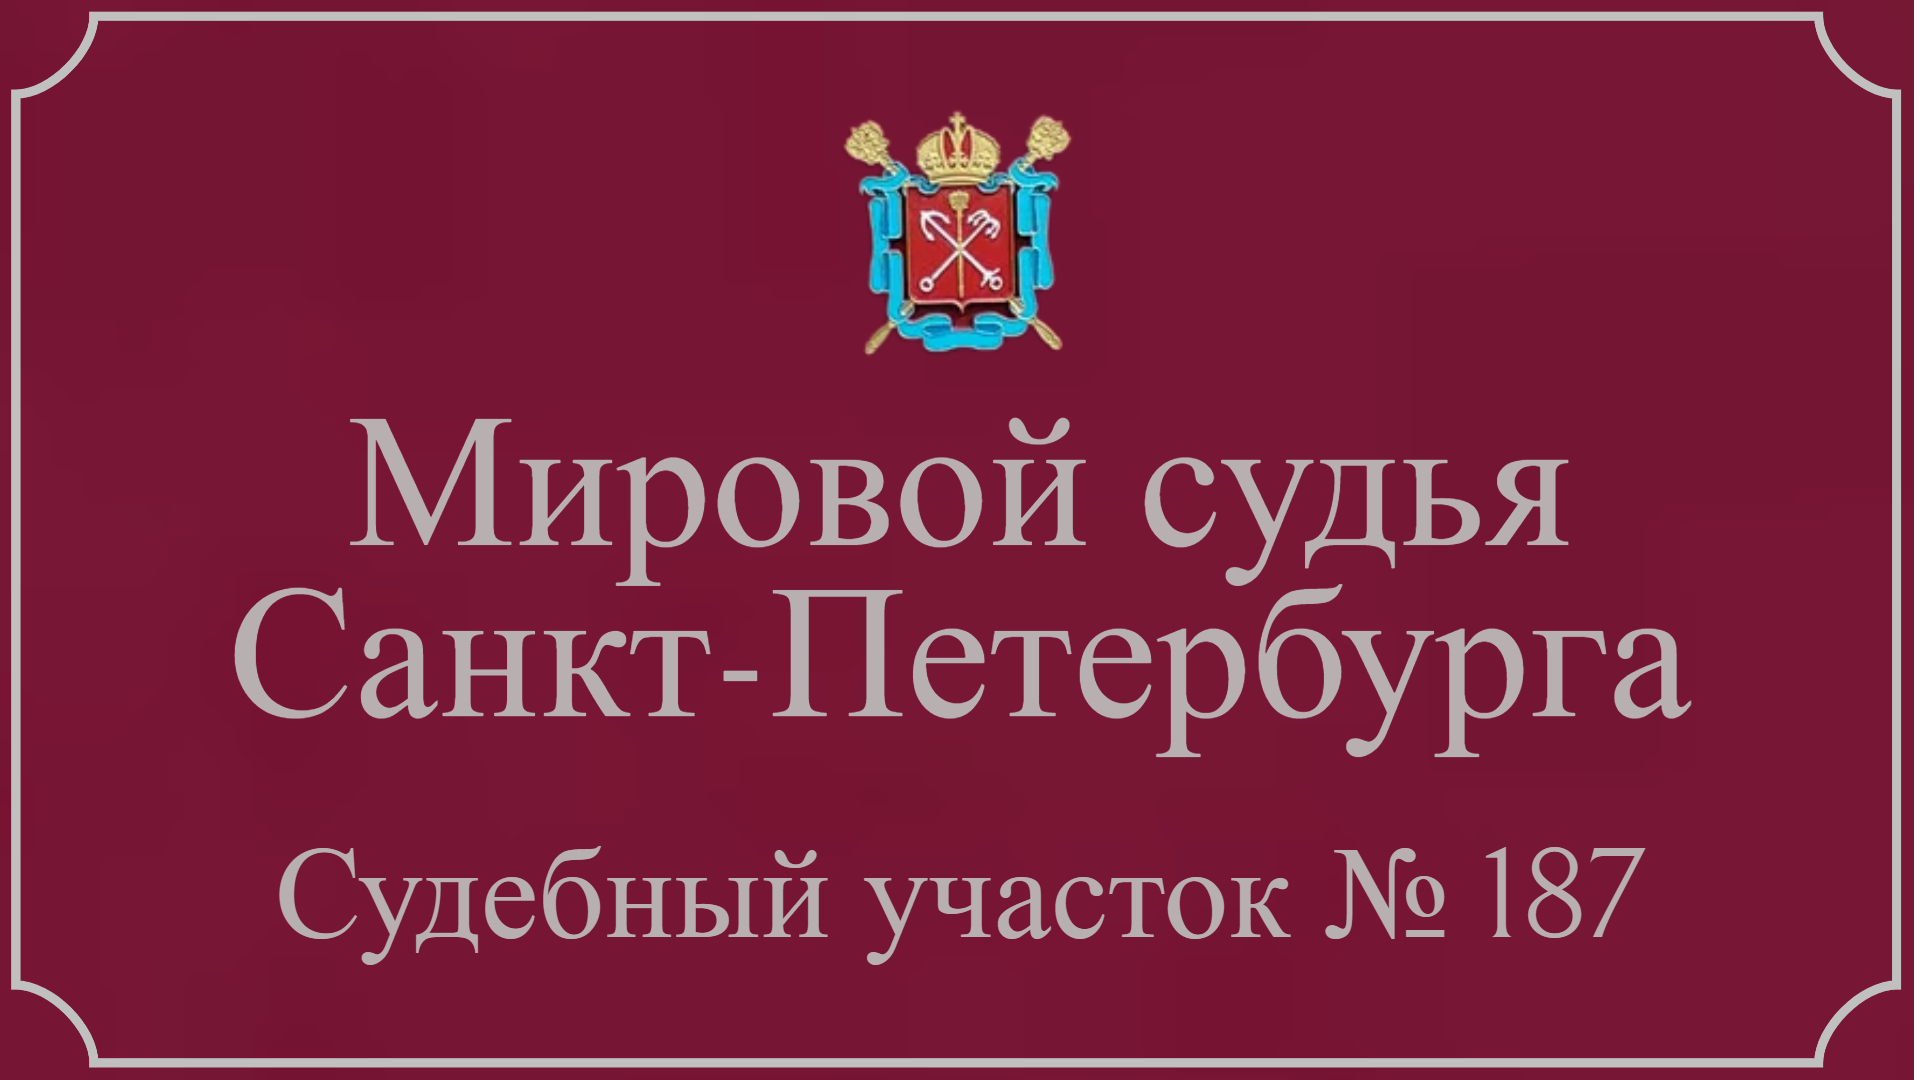 Информация по 187 судебному участку в Санкт-Петербурге.